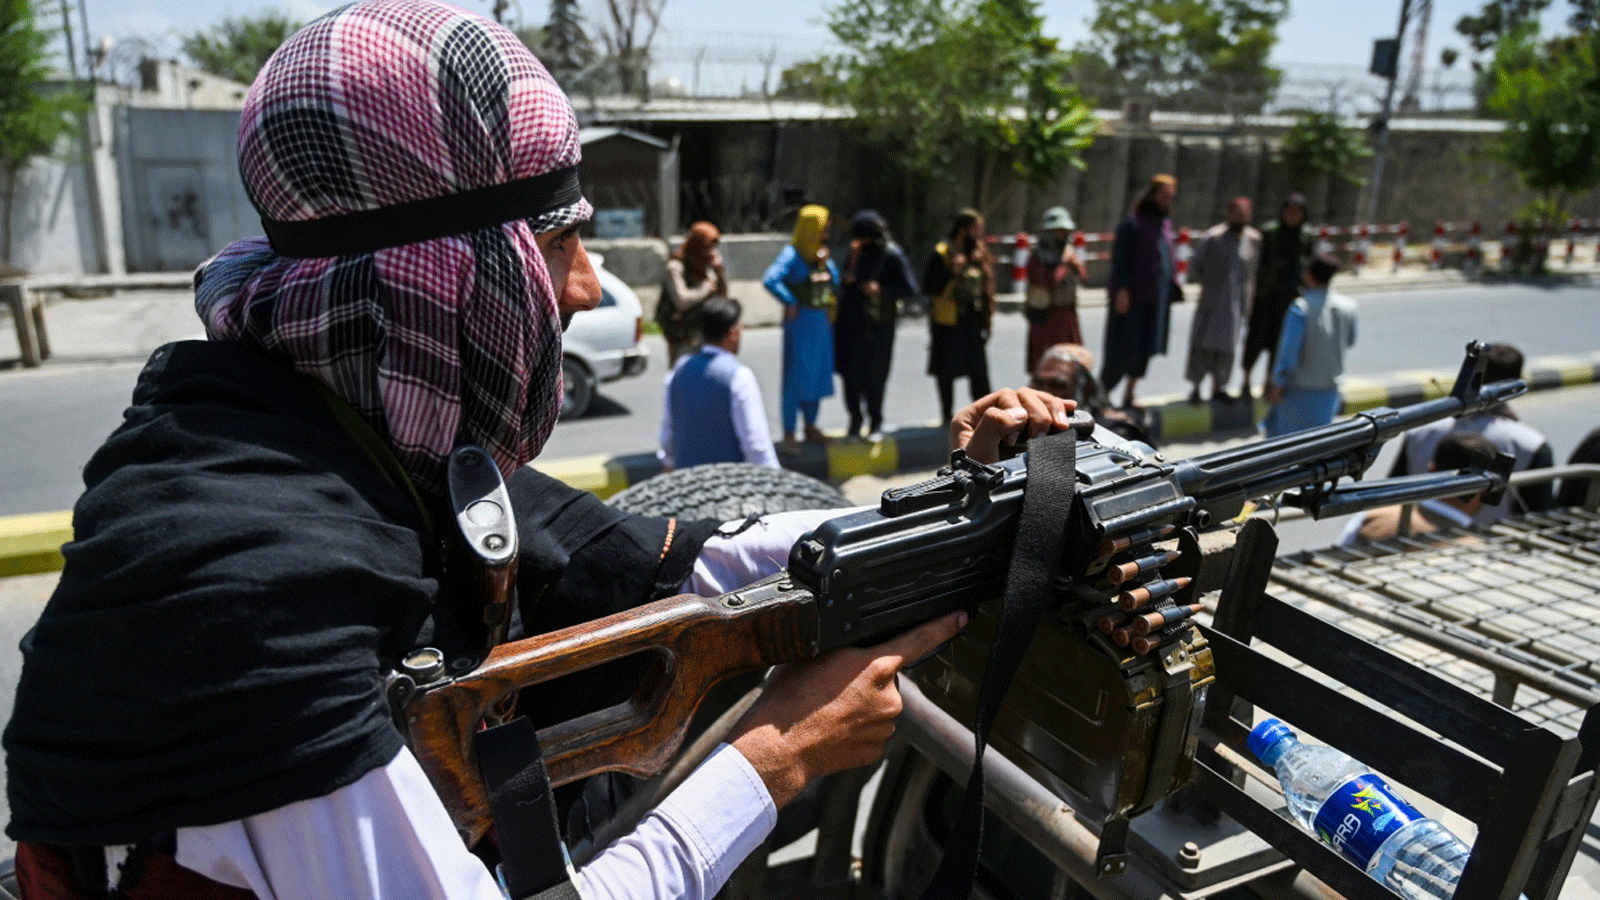 مقاتل من طالبان يصطحب مدفعاً رشاشاً فوق سيارة عسكرية أثناء قيامهم بدورية في شارع في كابول في 16 آب/أغسطس 2021